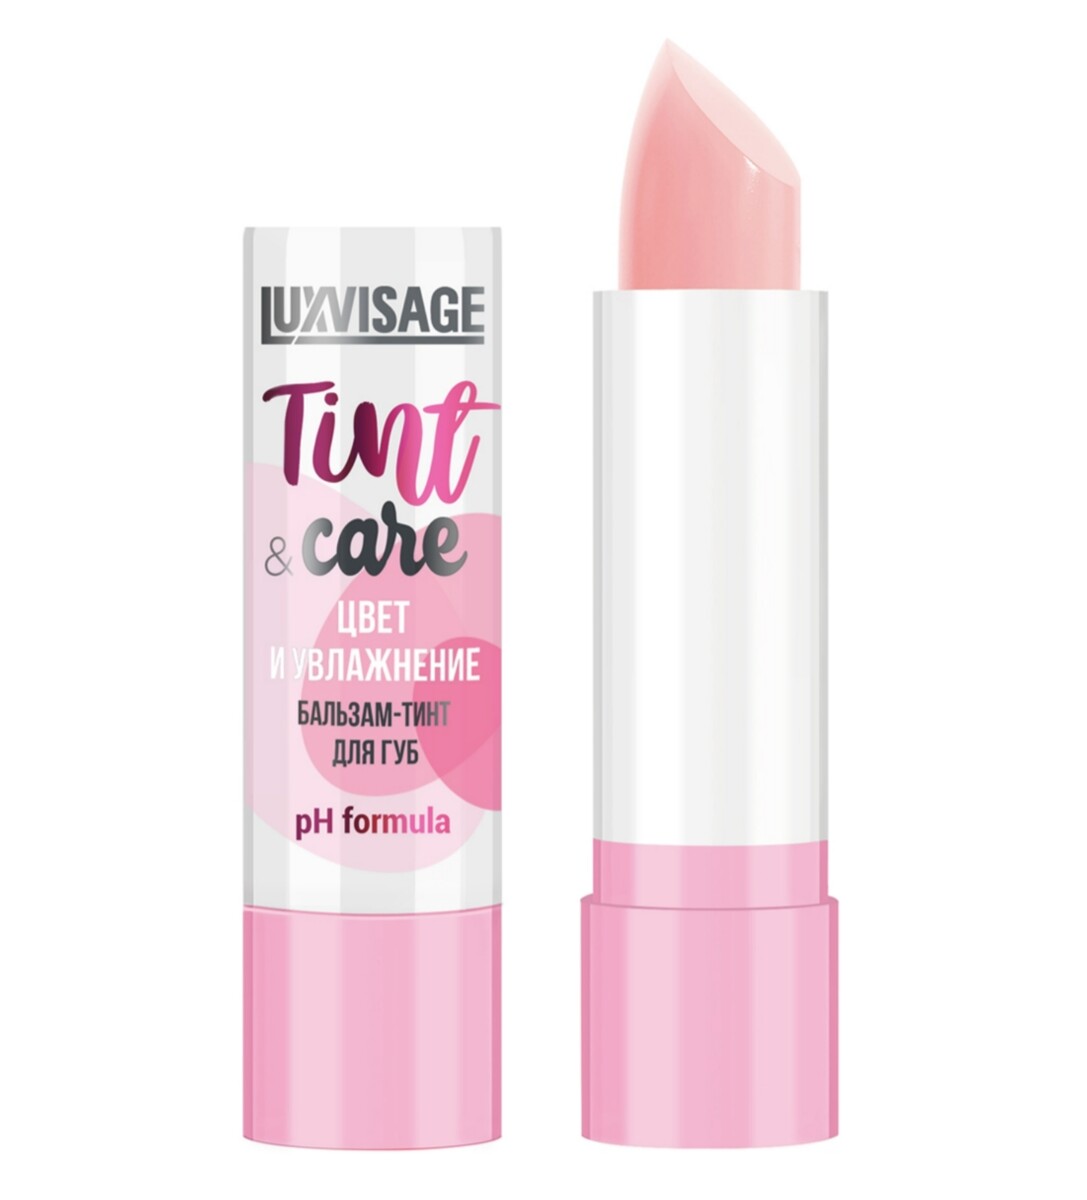 Luxvisage бальзам-тинт для губ luxvisage tint & care ph formula цвет и увлажнение тон 01 3,9г luxvisage бальзам для губ luxvisage shine